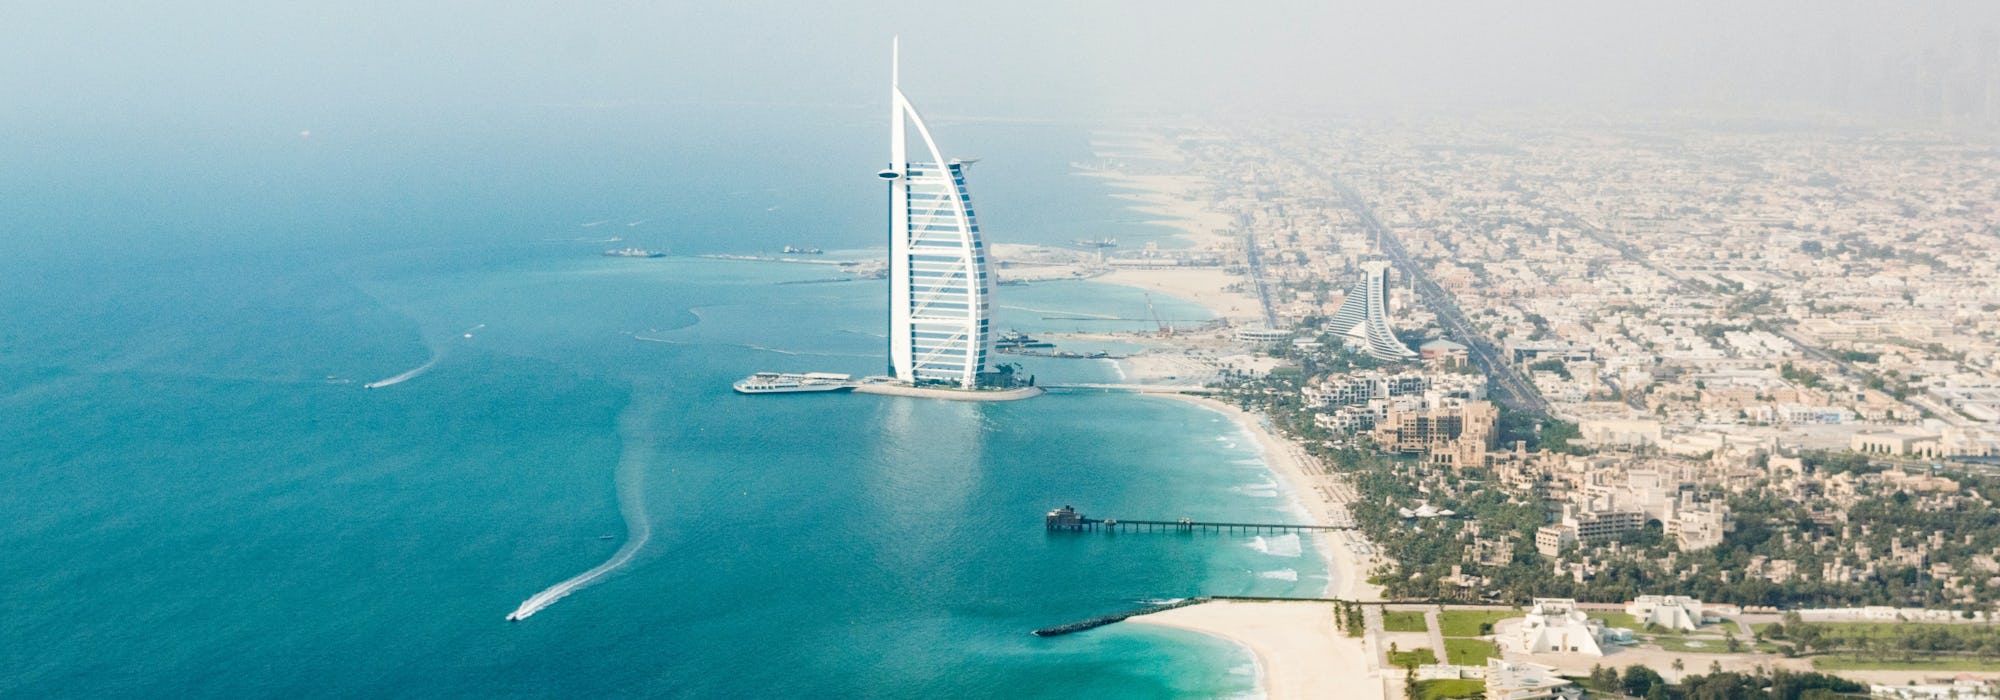 Överblicks bild över Dubais hamn med byggnader stränder och klarblått vatten.